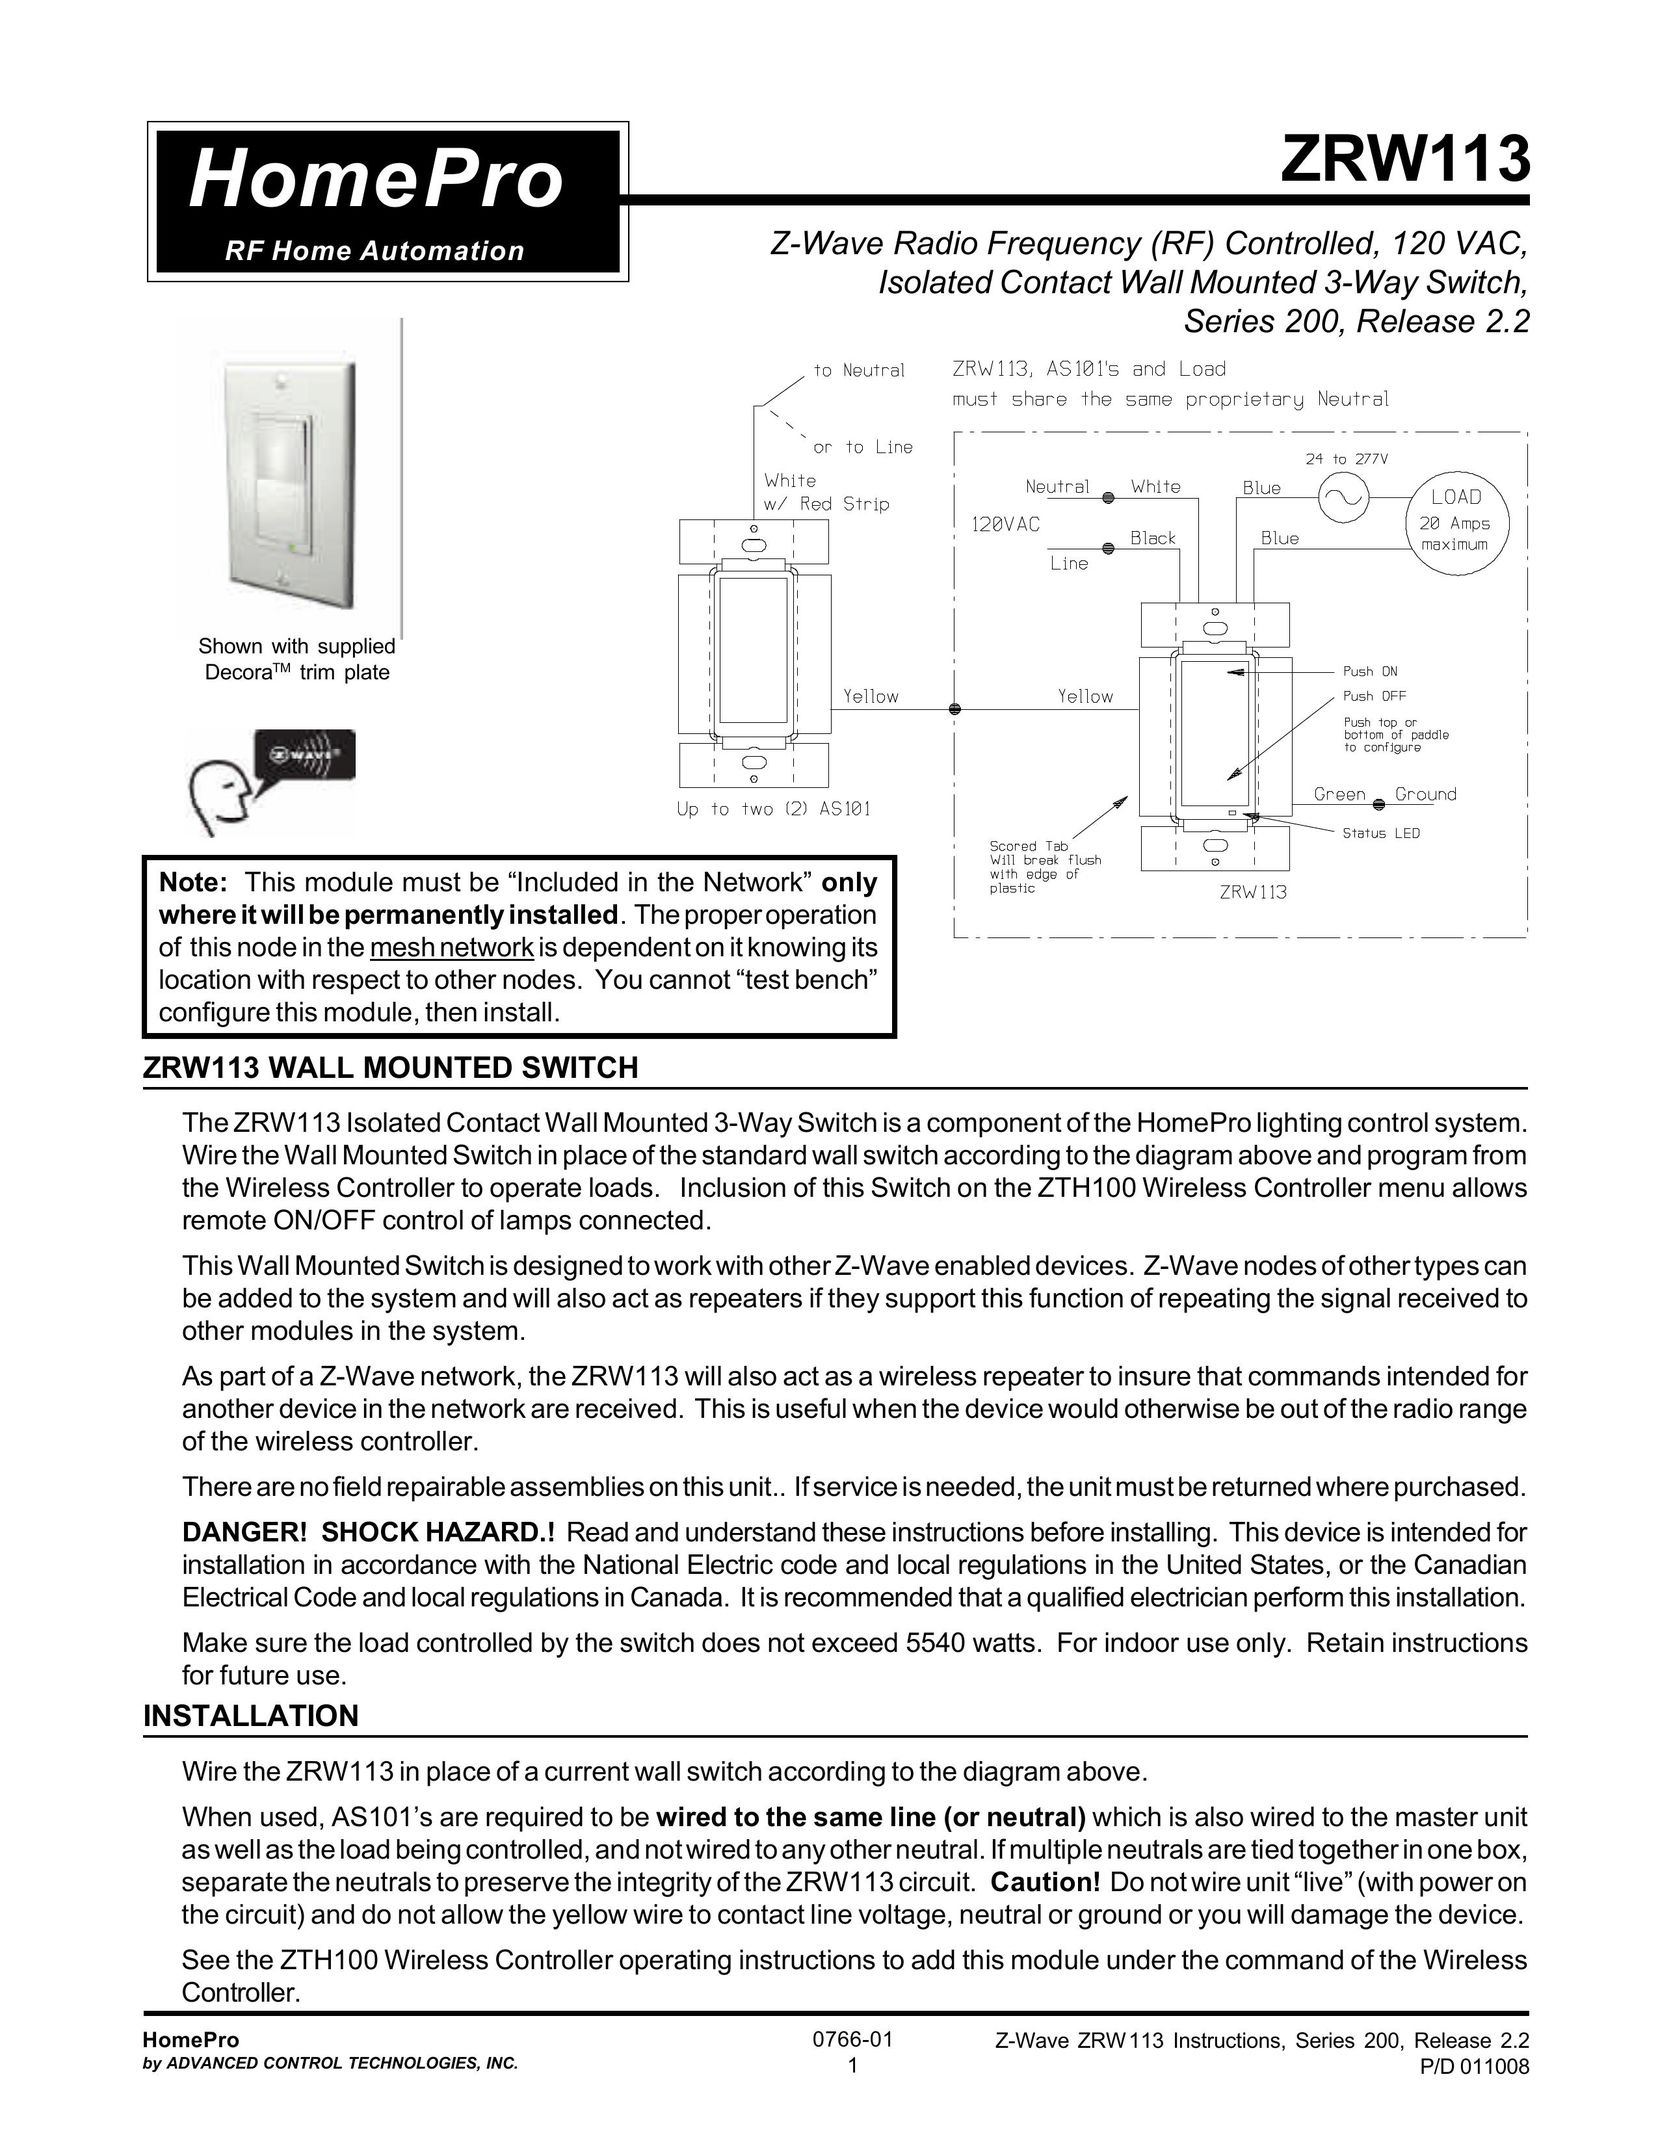 ADTX ZRW113 Switch User Manual